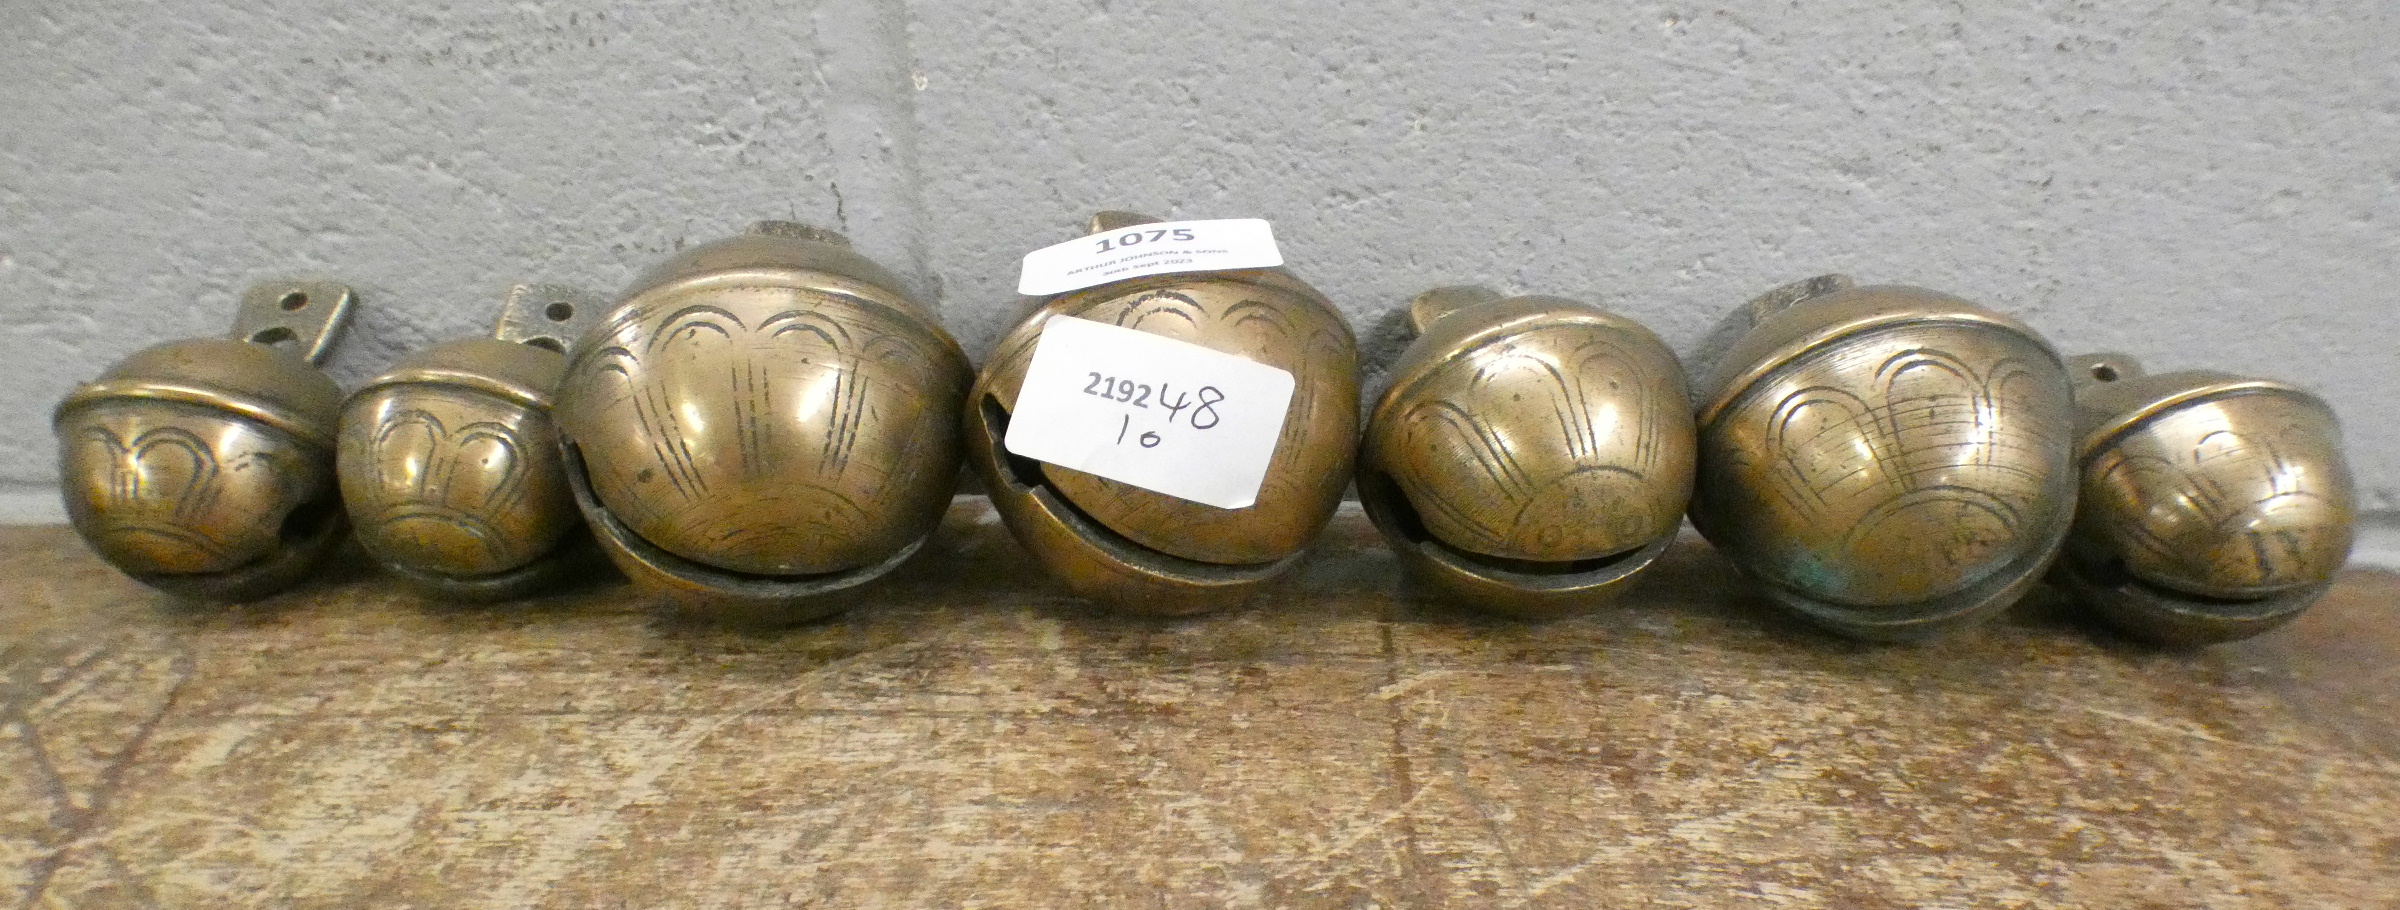 Seven bronze bells